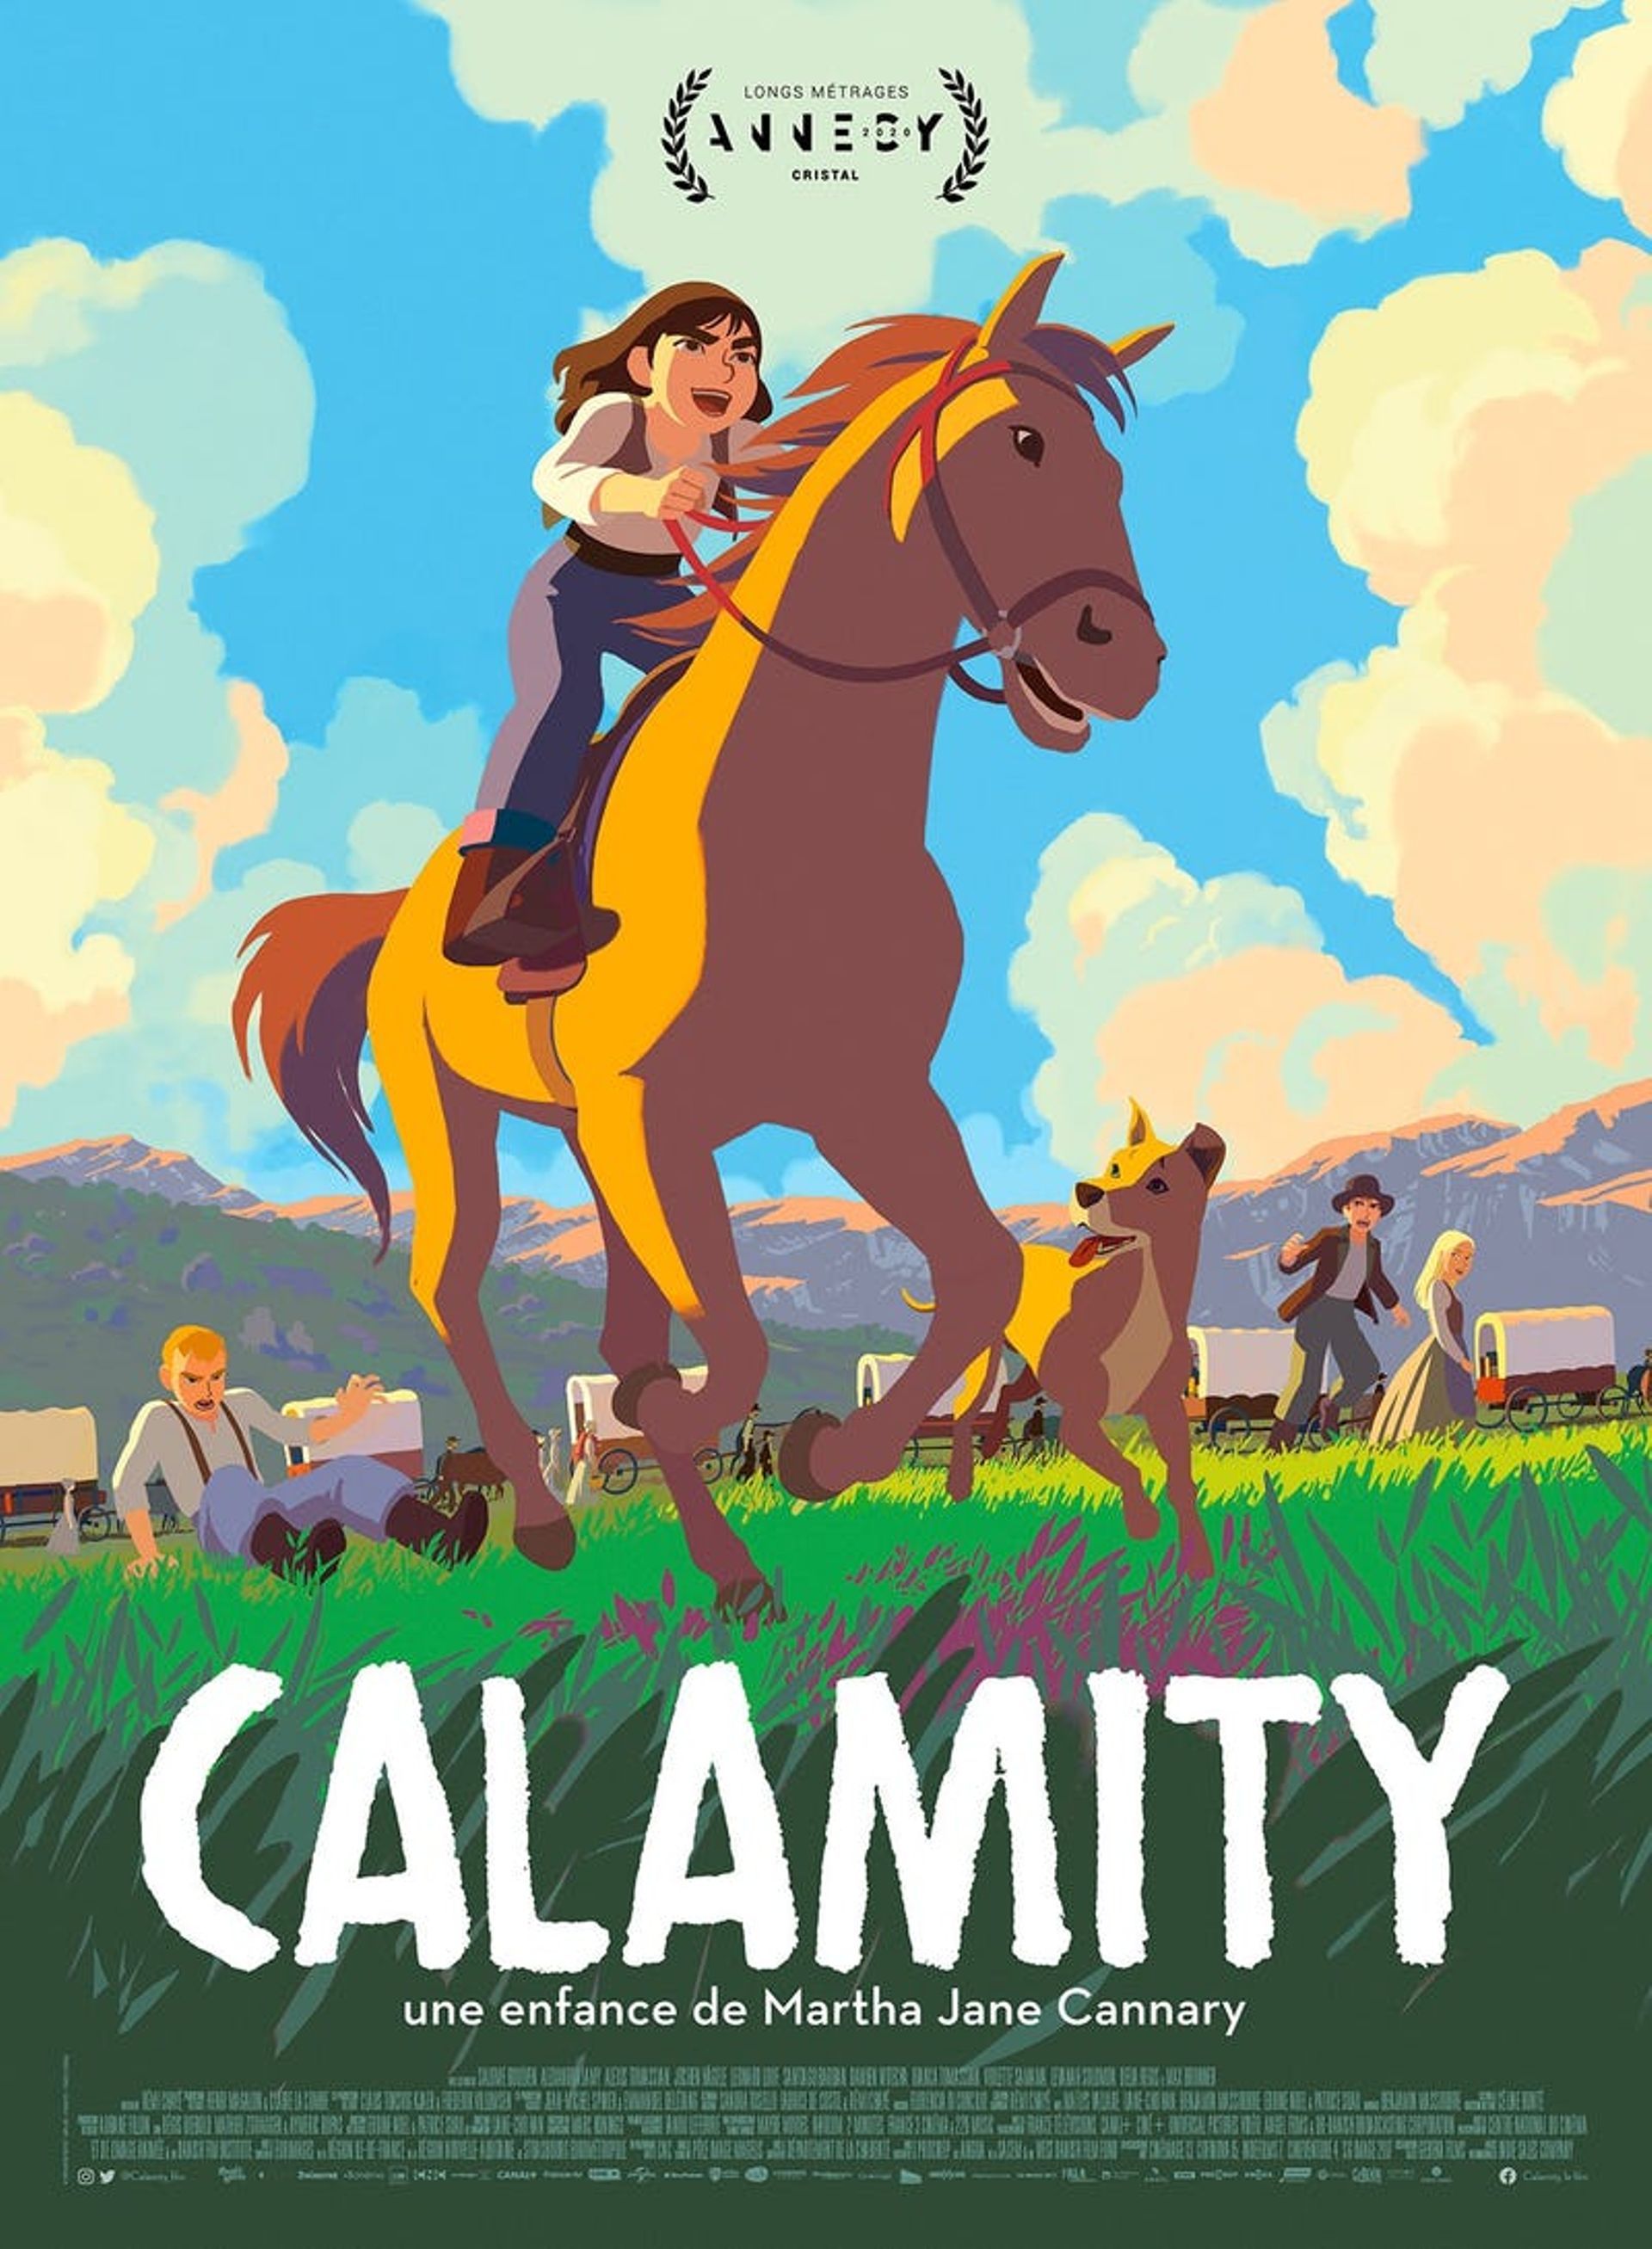 L'affiche de "Calamity"